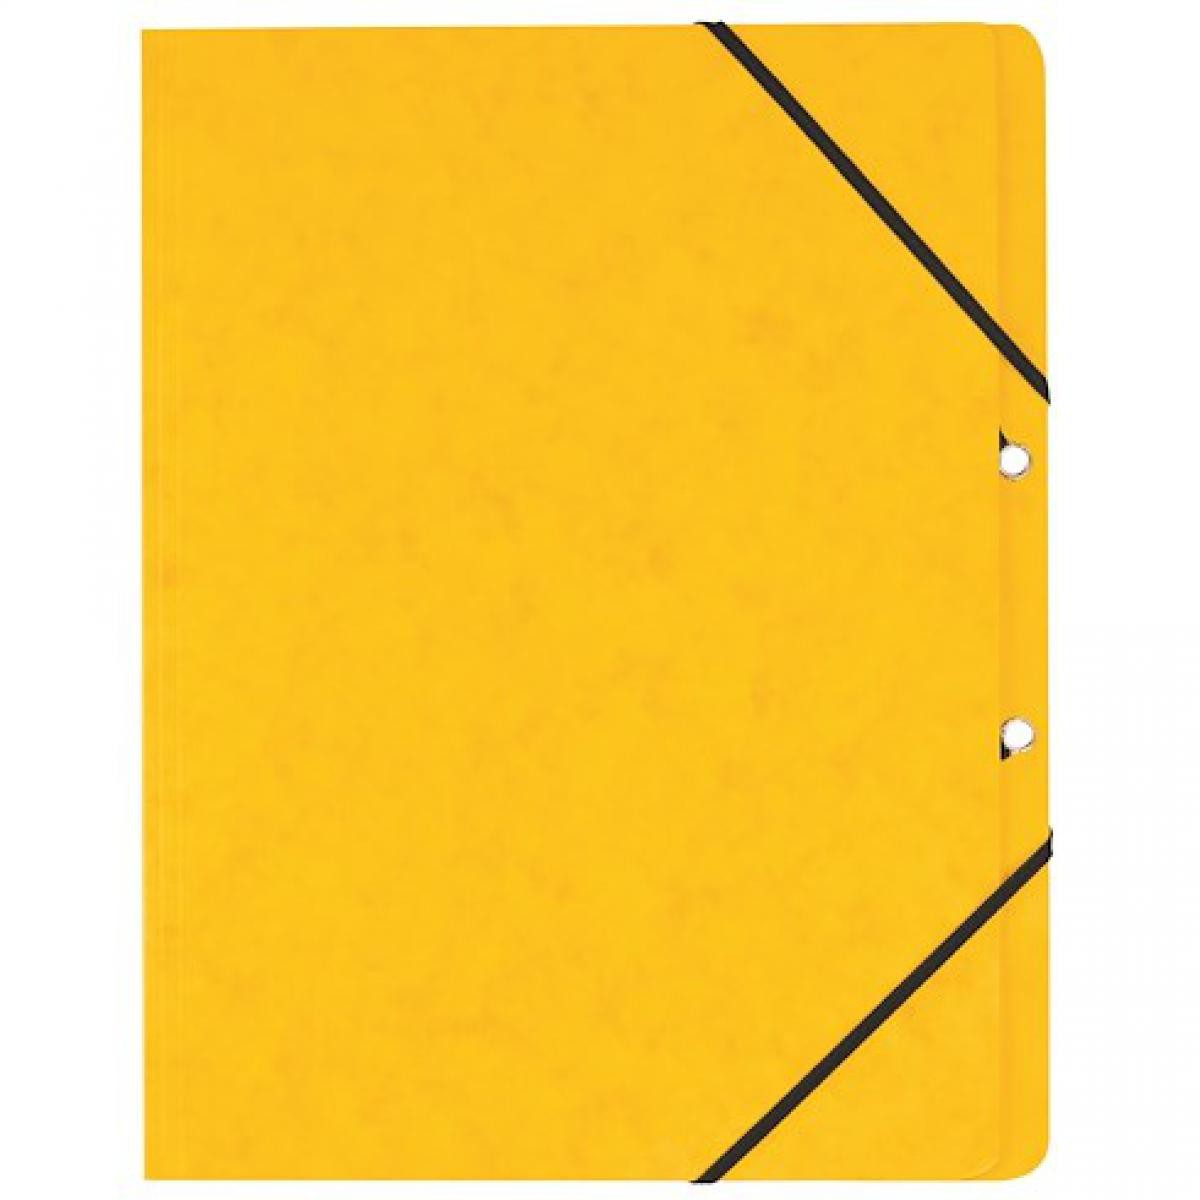 Exacompta - Chemise à élastique sans rabat Exacompta 24 x 32 cm - jaune - Lot de 10 - Accessoires Bureau